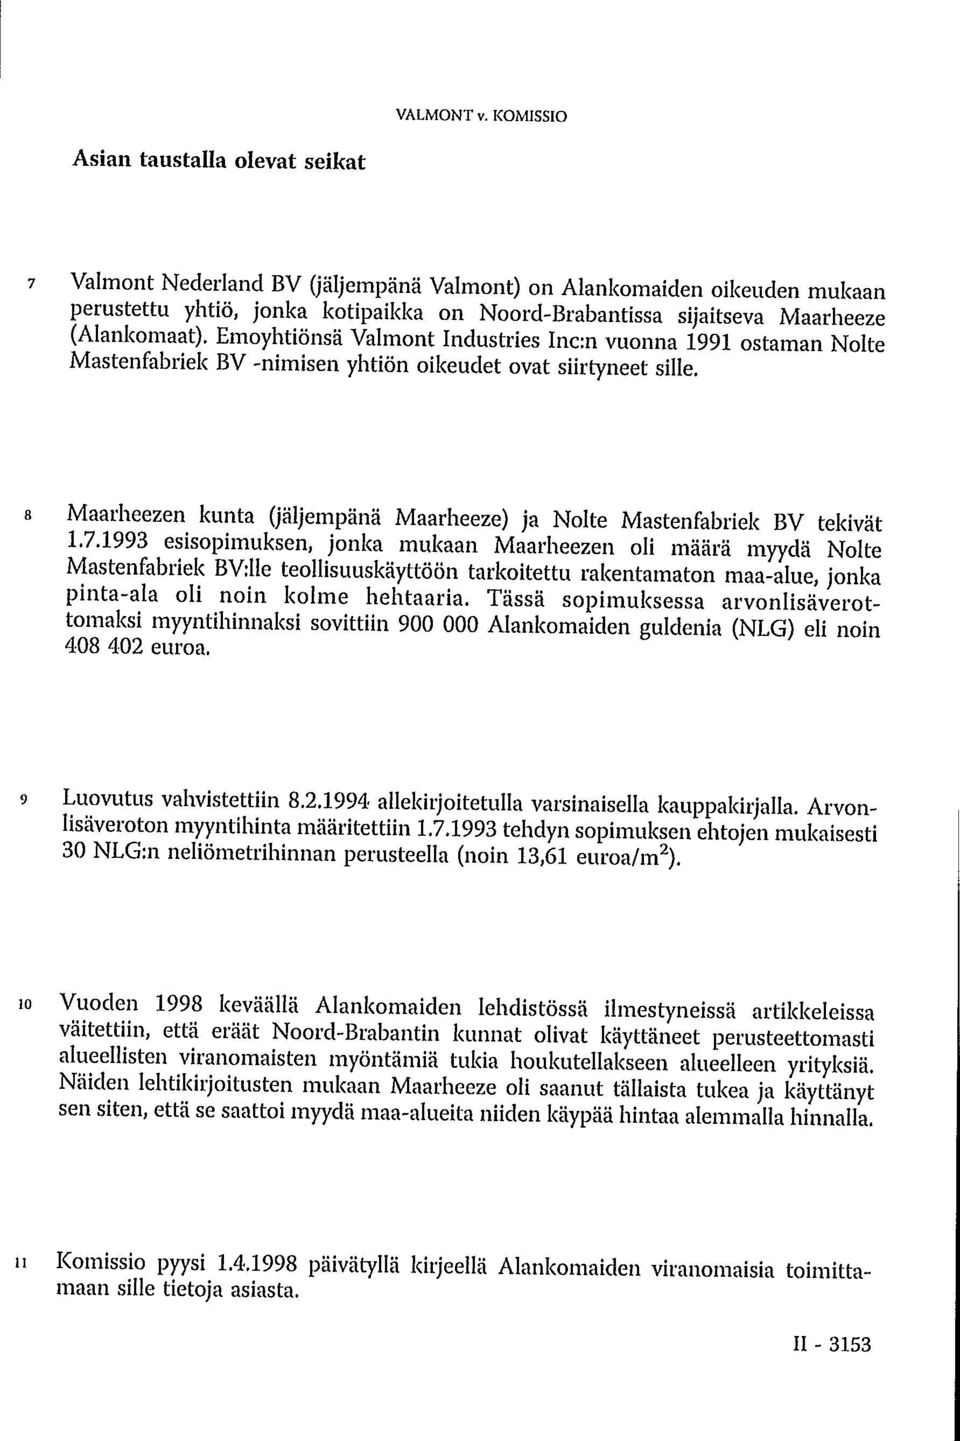 (Alankomaat). Emoyhtiönsä Valmont Industries Inc:n vuonna 1991 ostaman Nolte Mastenfabriek BV -nimisen yhtiön oikeudet ovat siirtyneet sille.